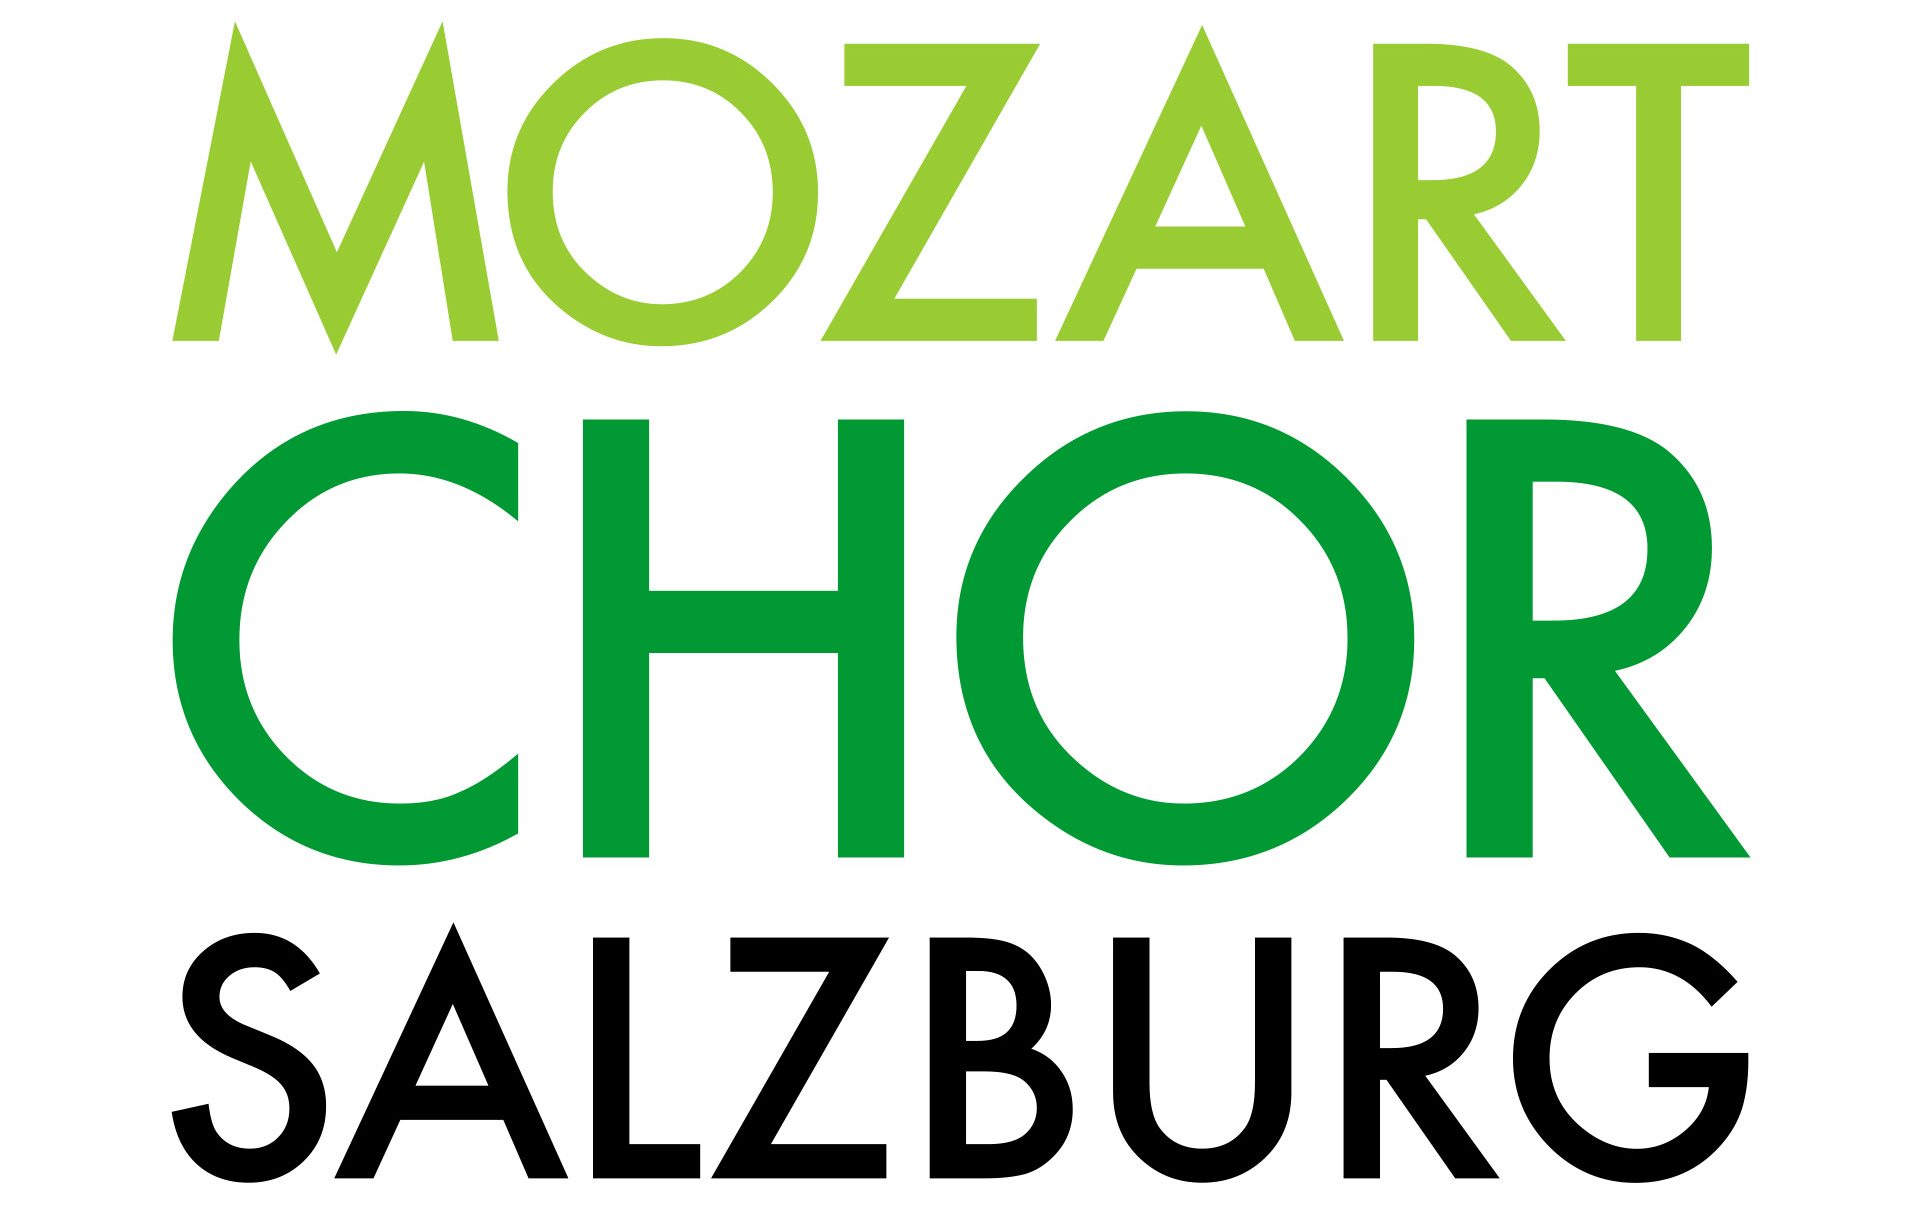 Mozartchor.com